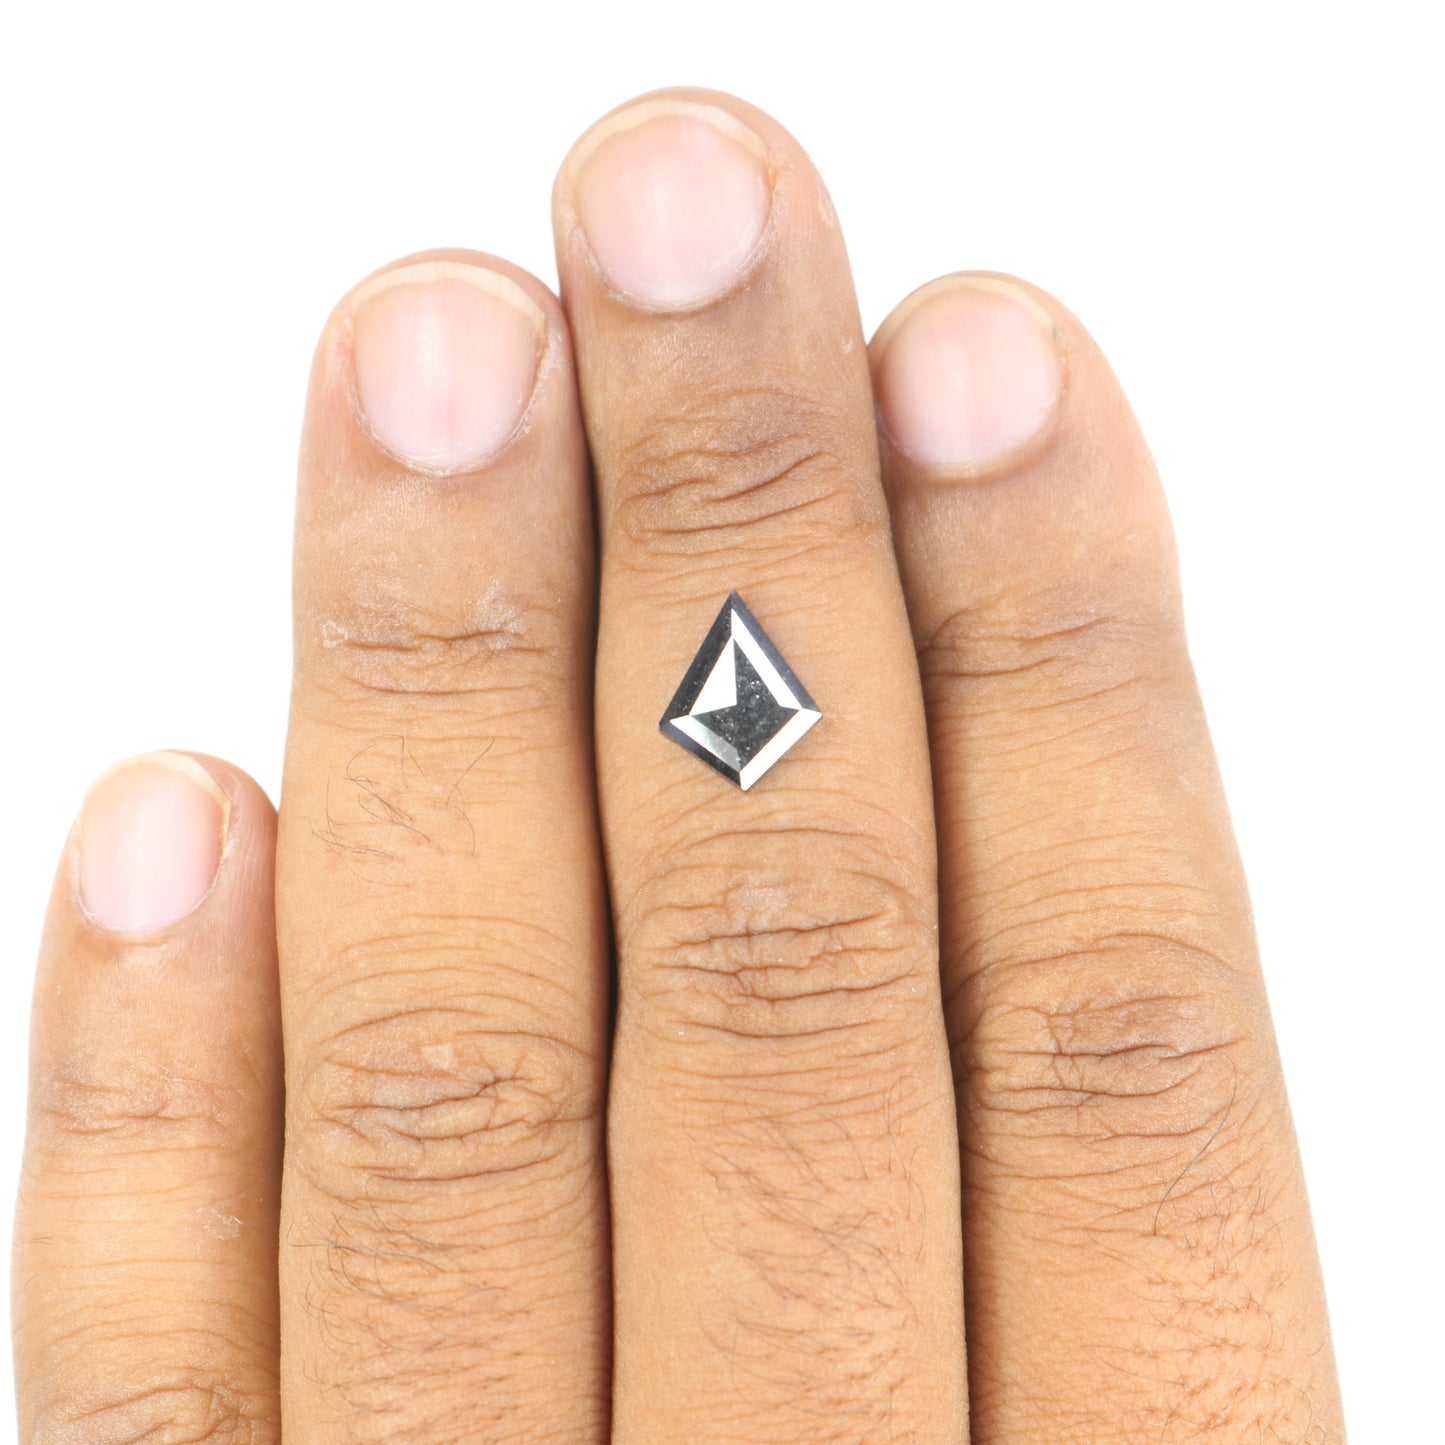 1.51 CT Fancy Salt And Pepper Kite Shape Diamond For Wedding Ring | Engagement Ring